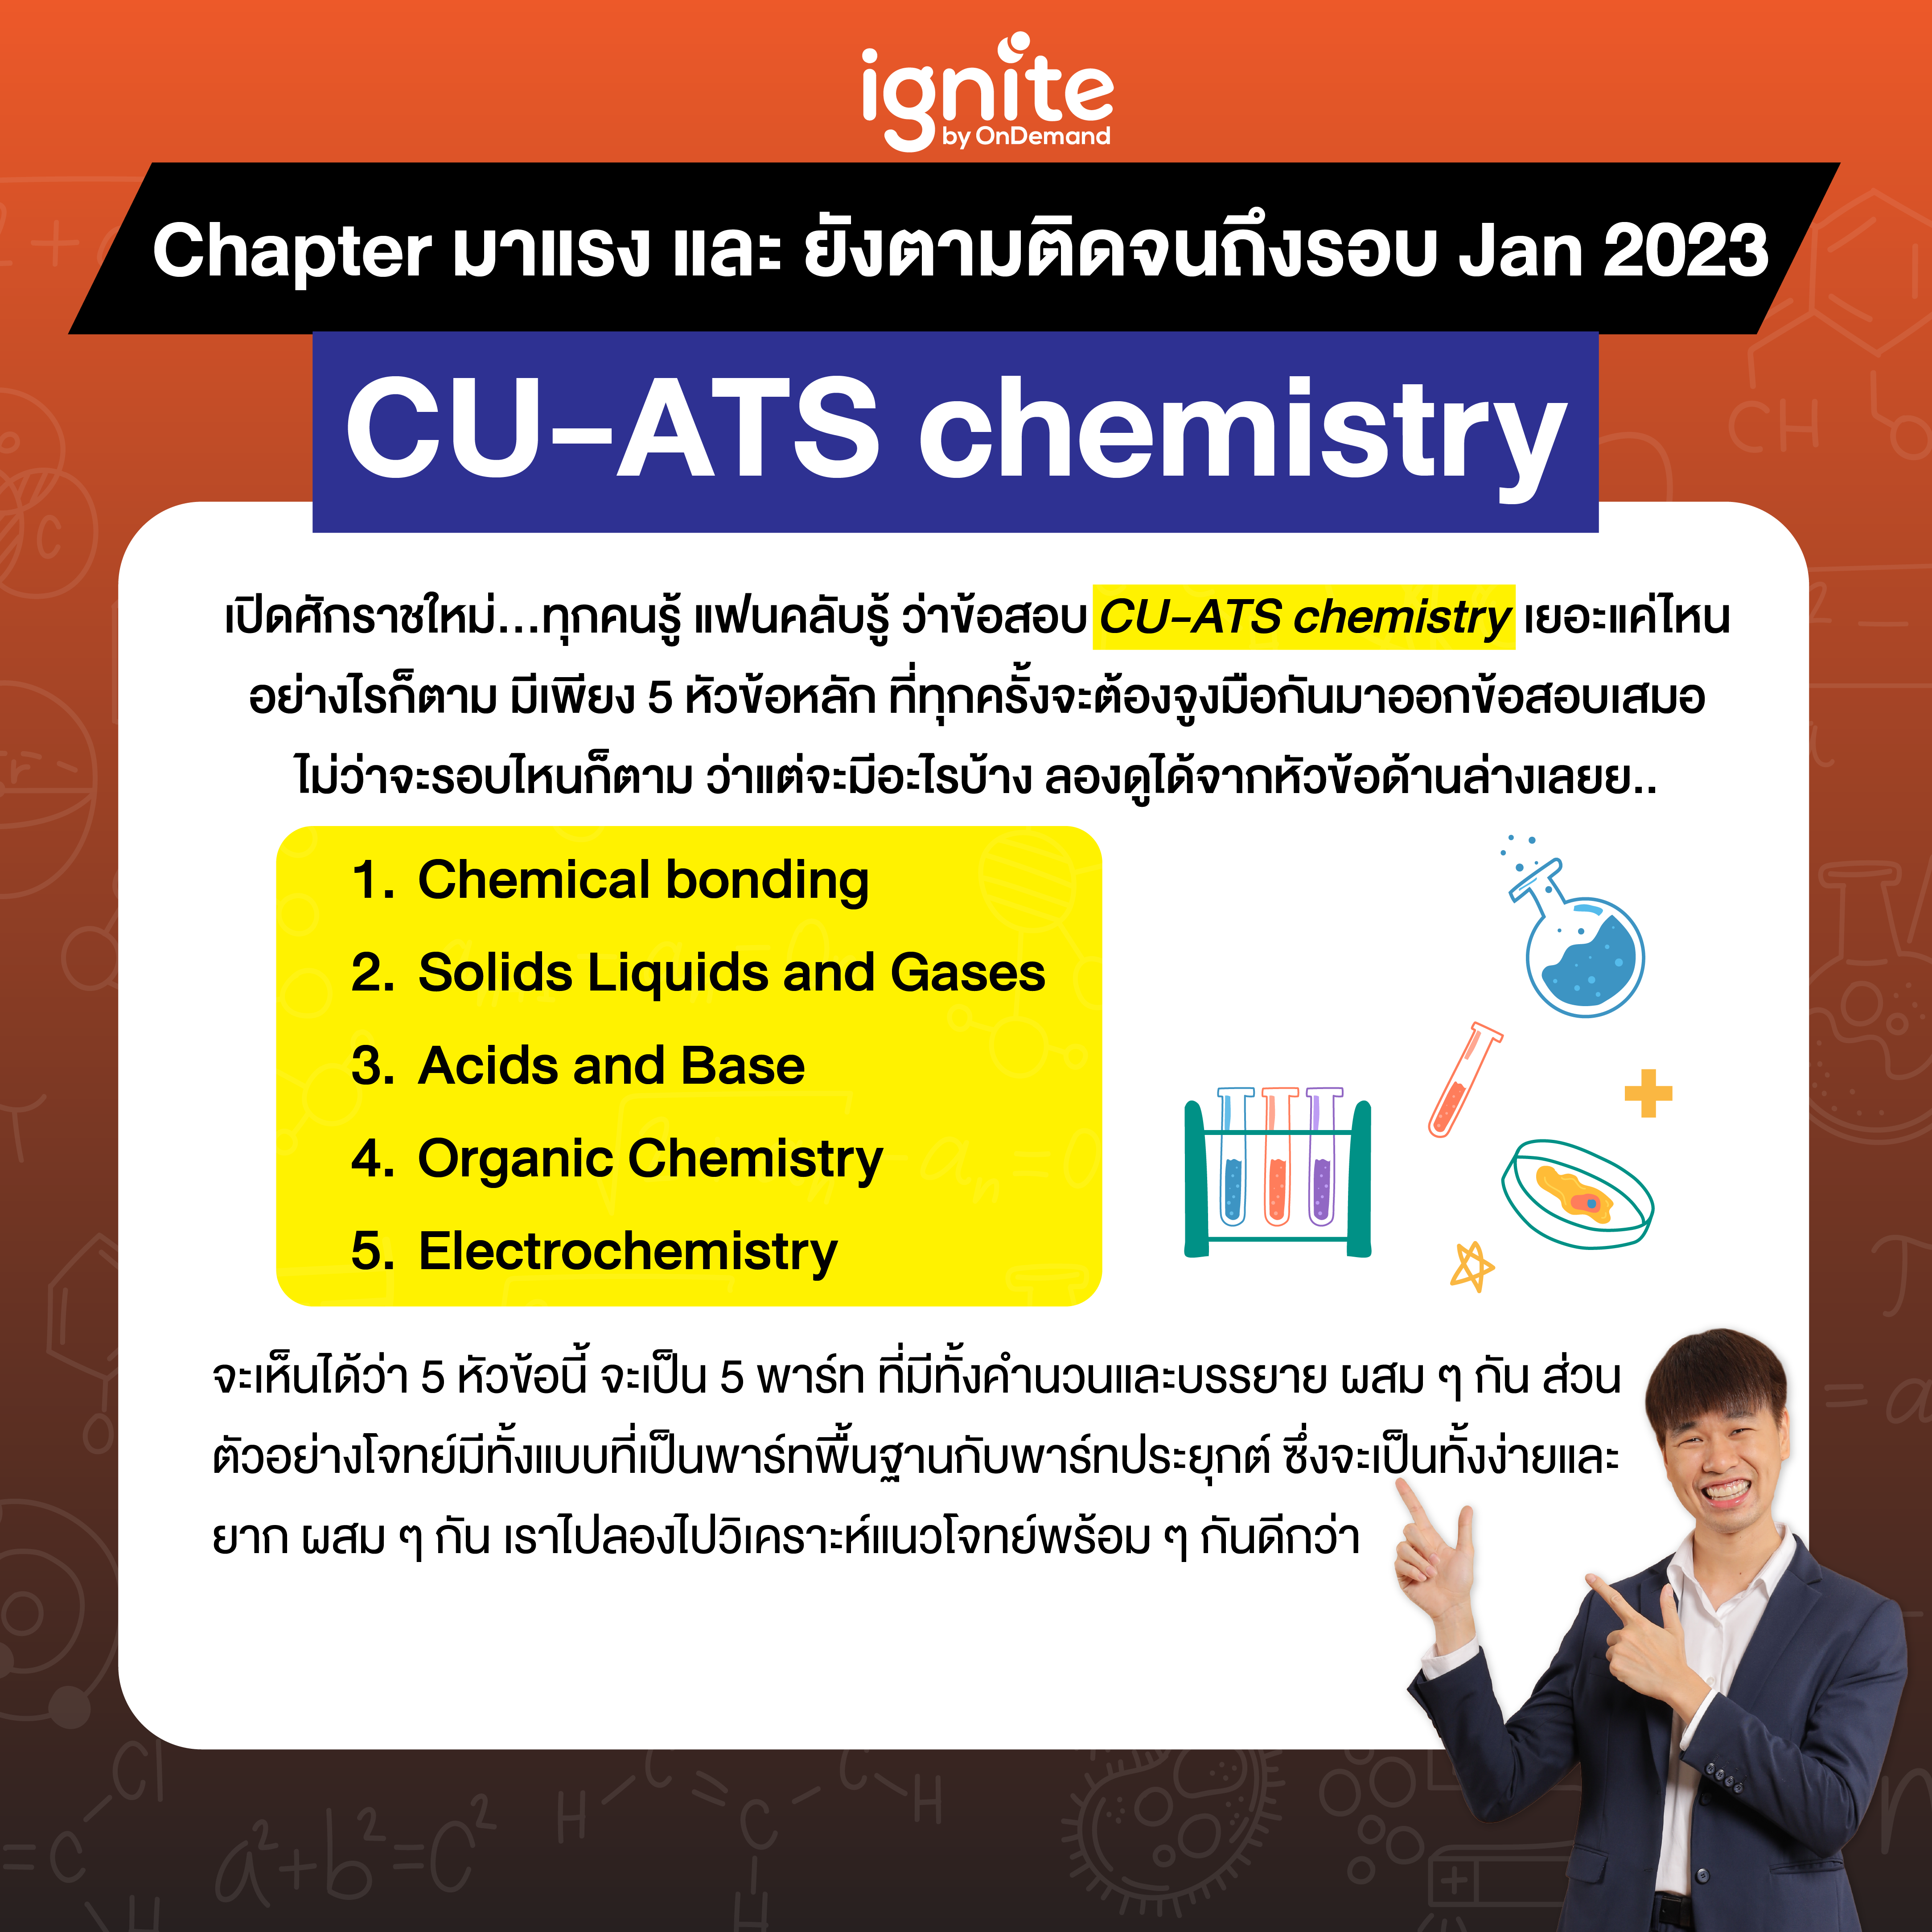 รวมโจทย์เด็ด CU-ATS - Chemistry - Jan 2023 - ignite by OnDemand